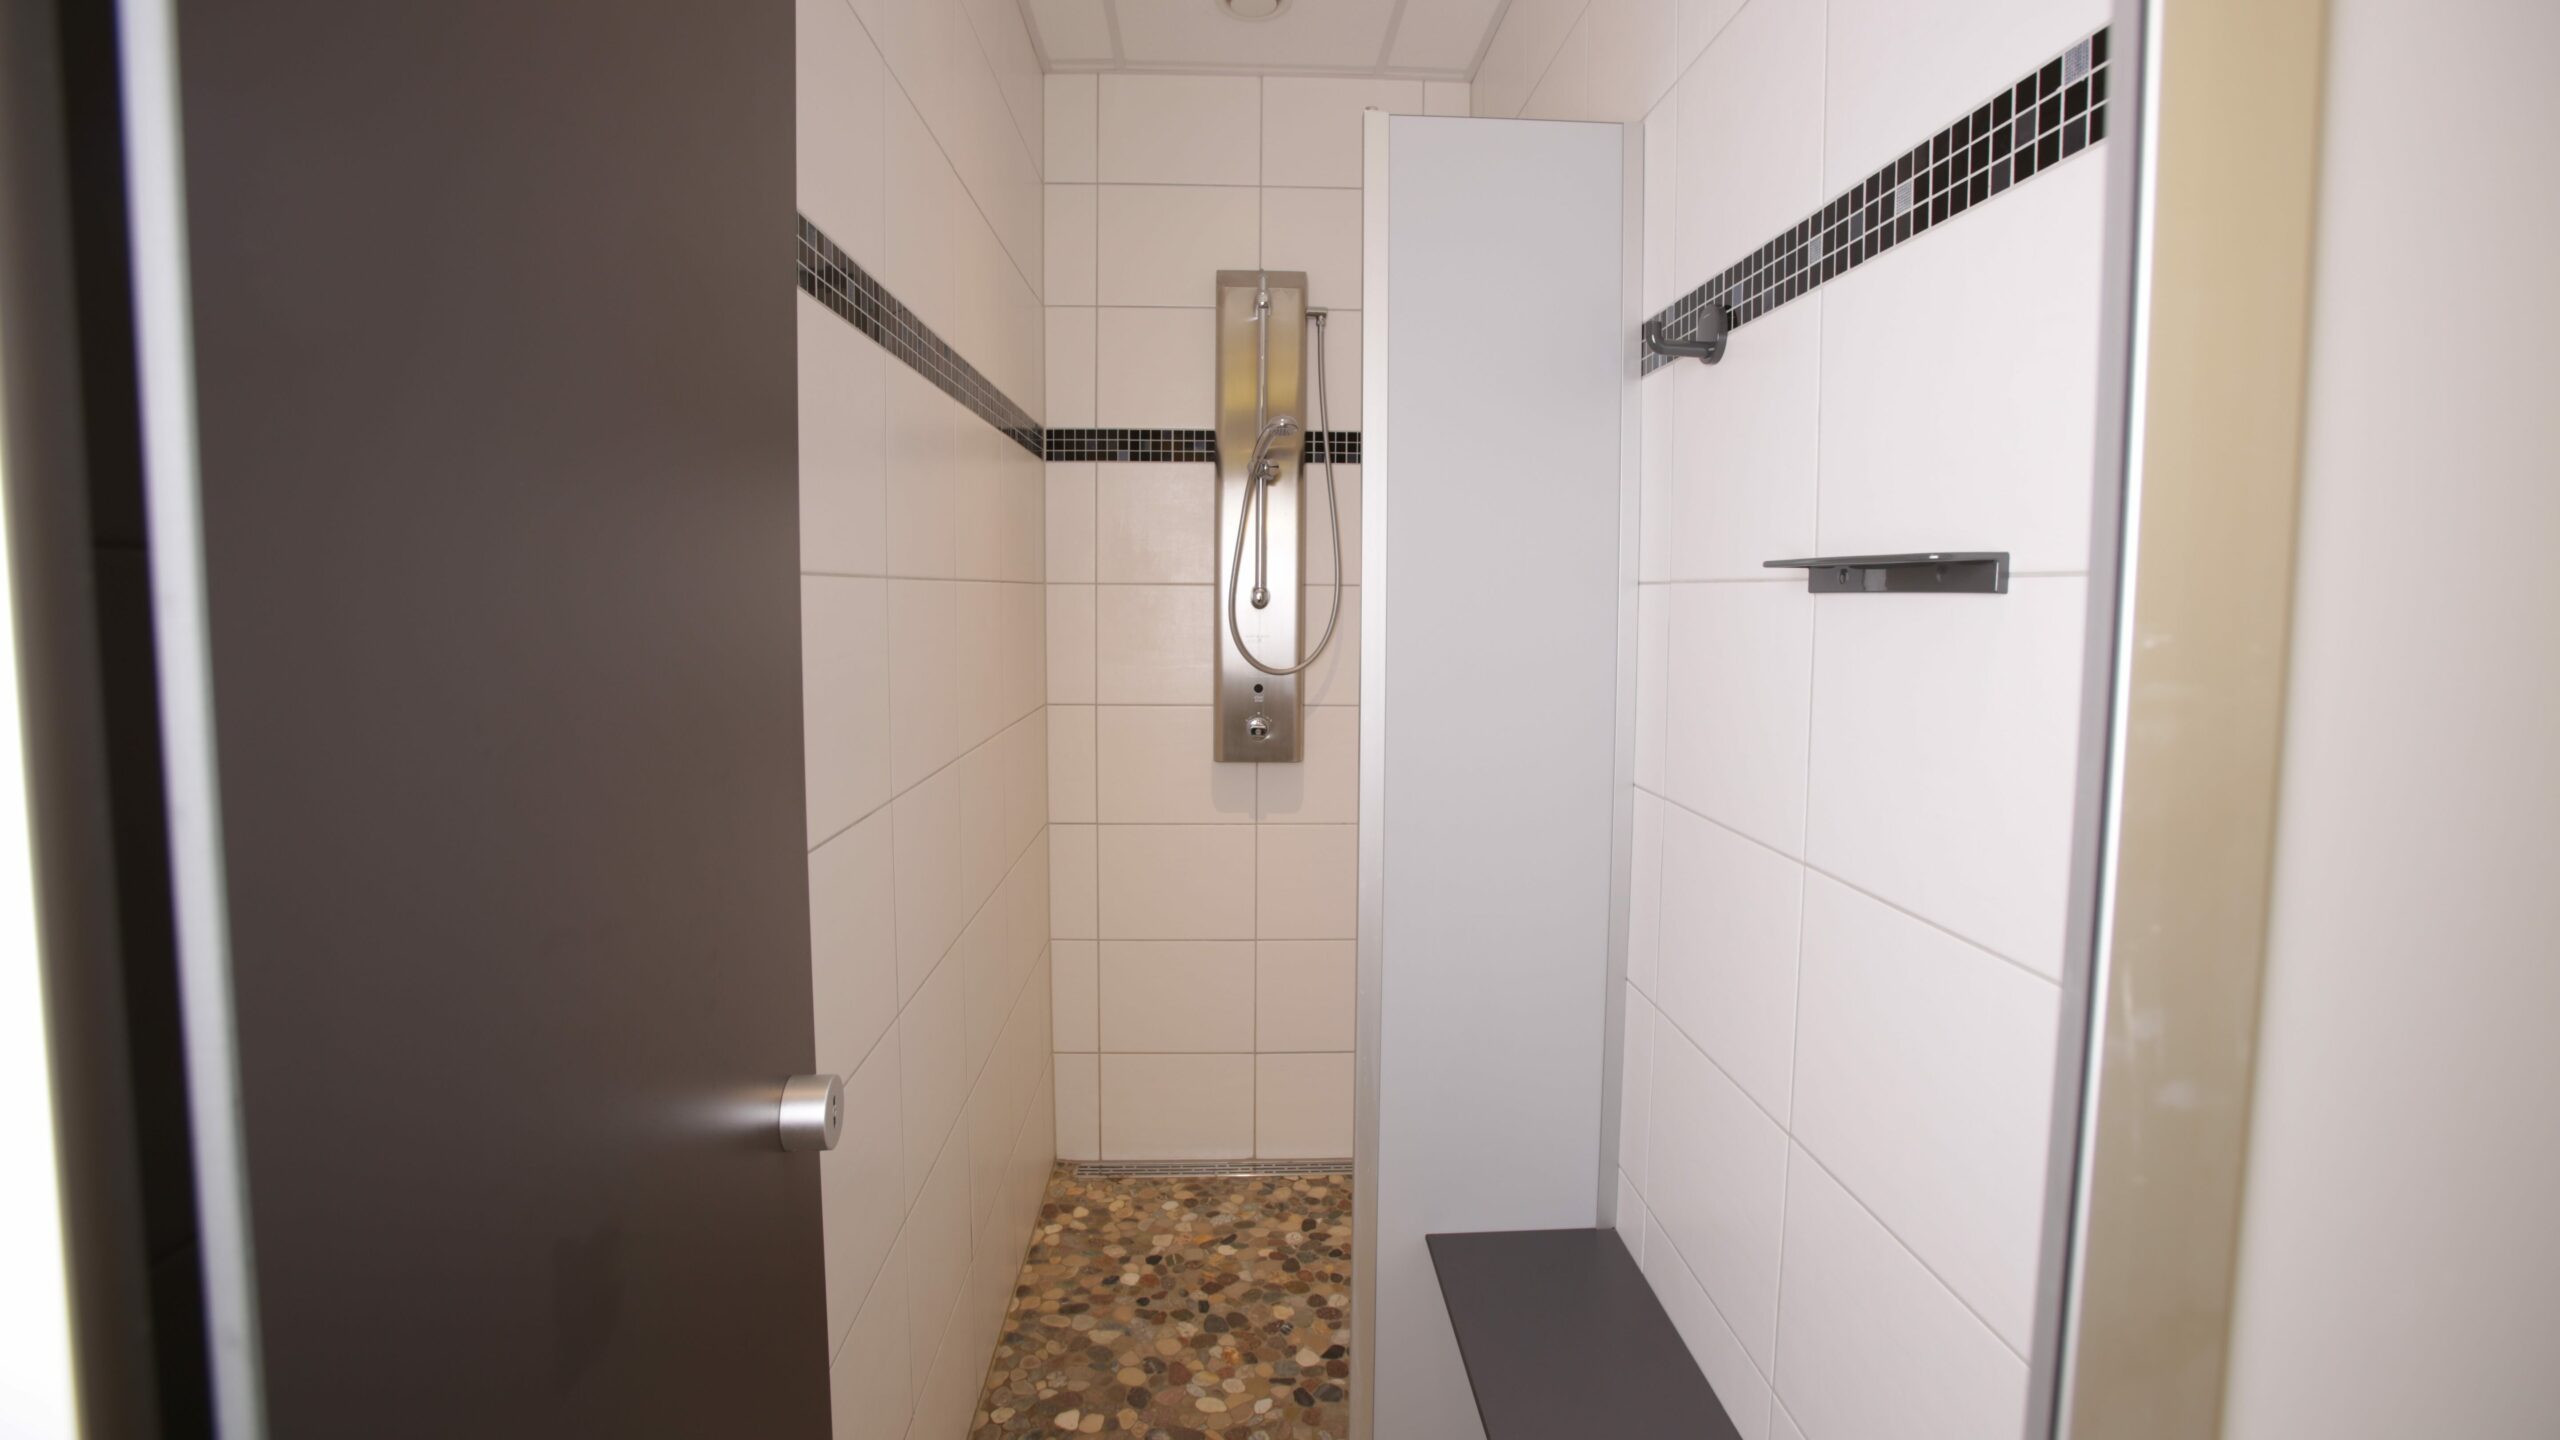 Eine saubere, modern geflieste Dusche in den Sanitäranlagen